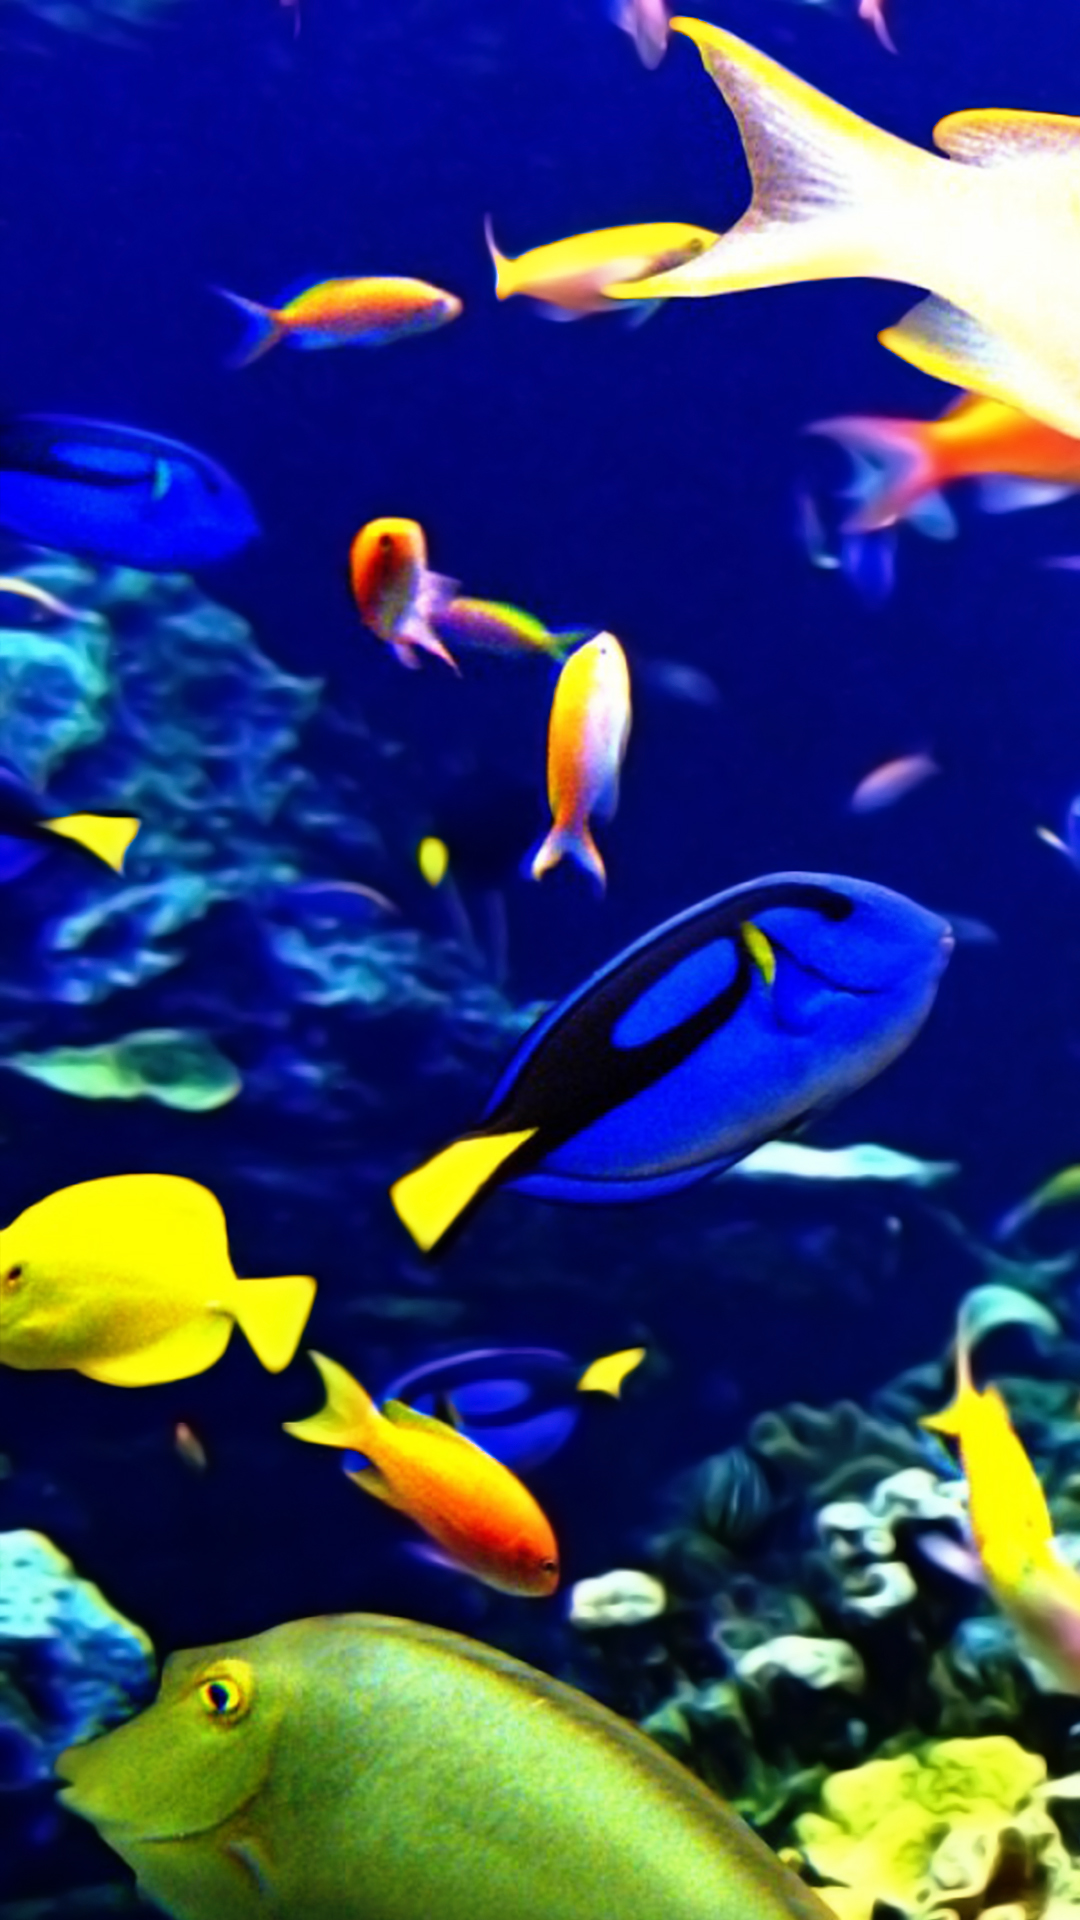 물고기 핸드폰 벽지,물고기,물고기,산호초 물고기,포맥 심장과,해양 생물학